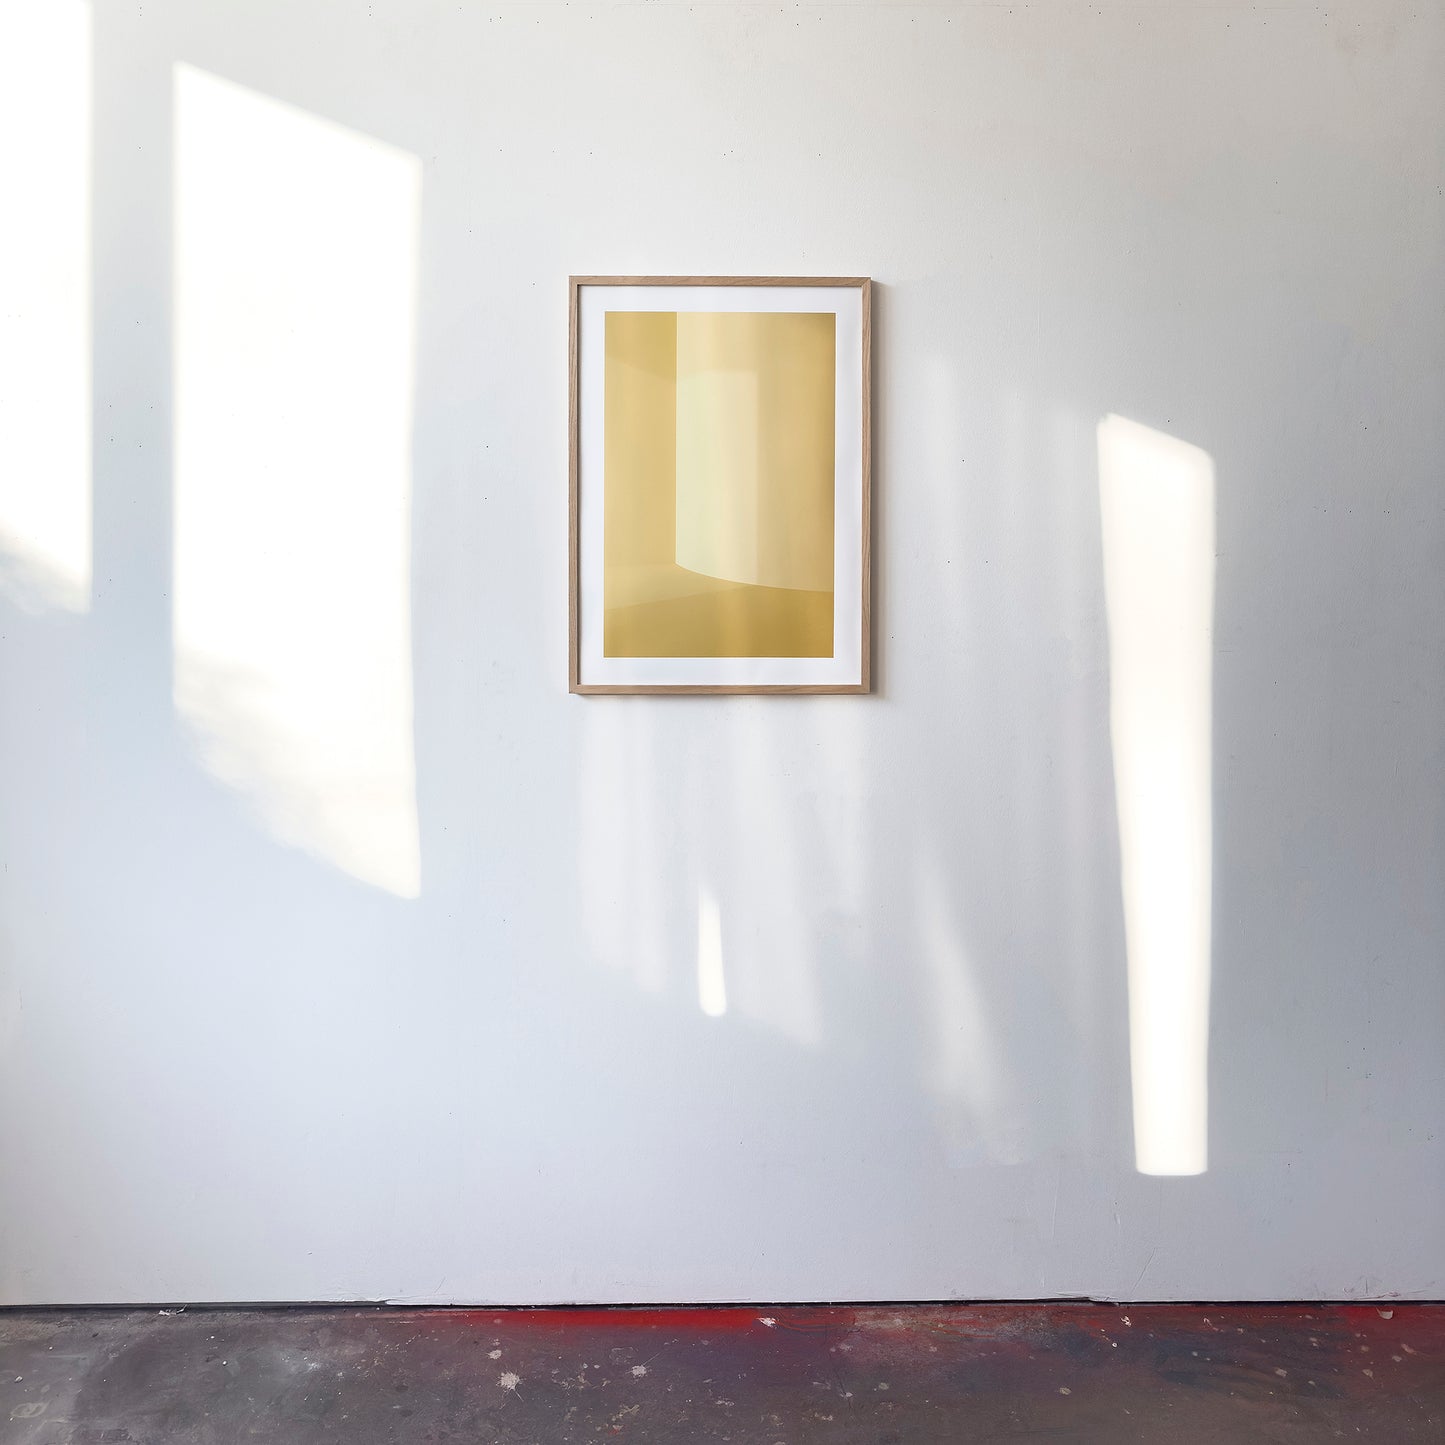 Kunstdruck im Bilderrahmen im Atelier, Motiv gelb monochrome Raumecke mit Lichteinfall, Titel Styr III